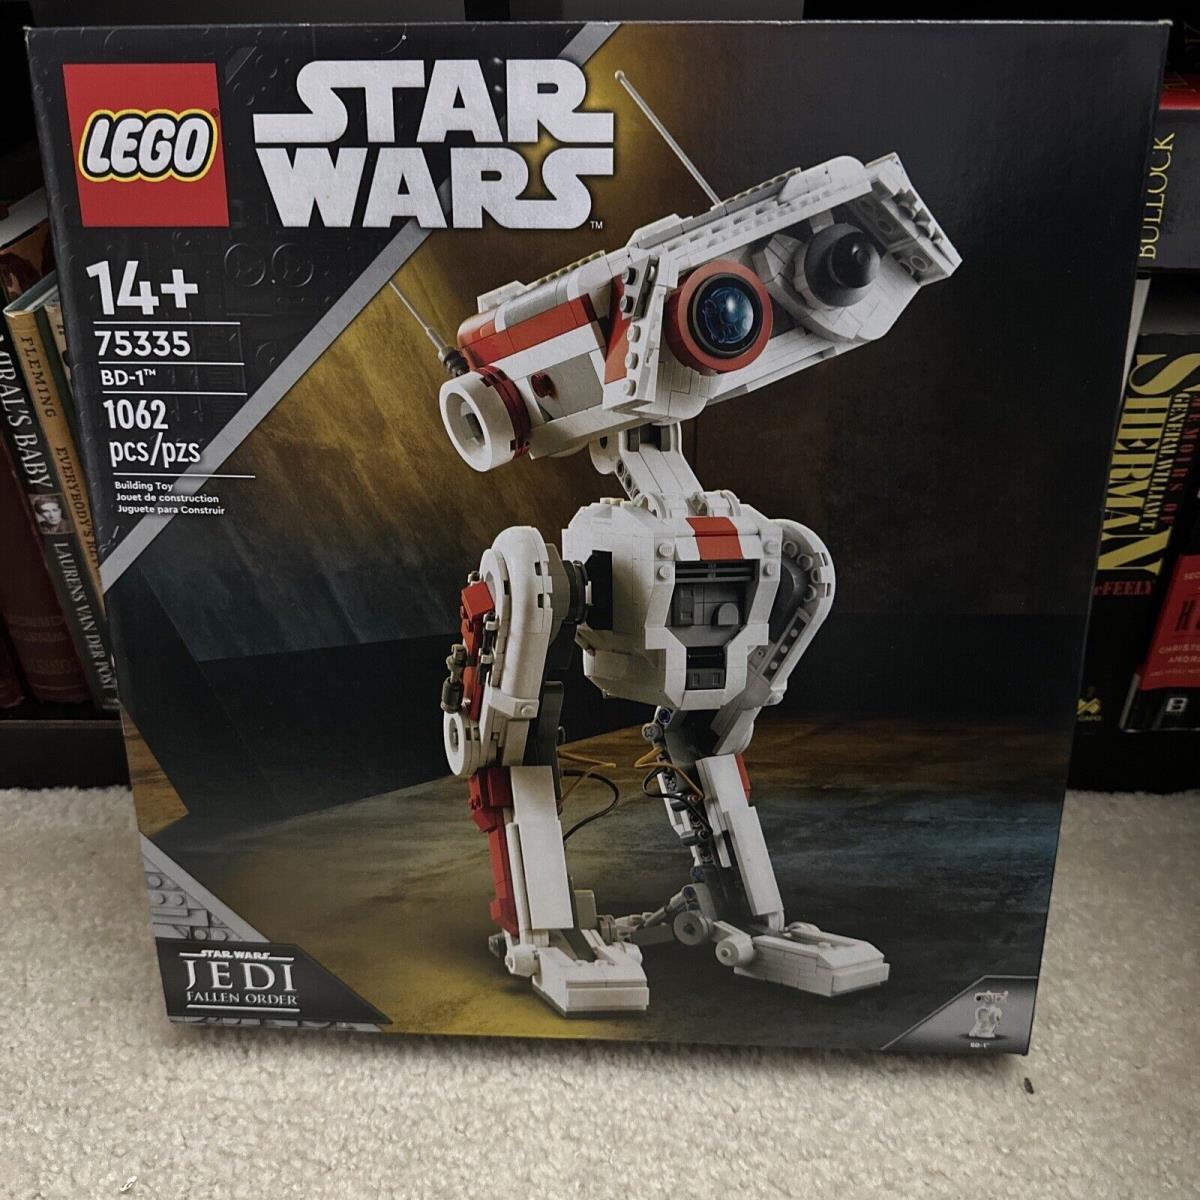 Lego Star Wars: BD-1 75335